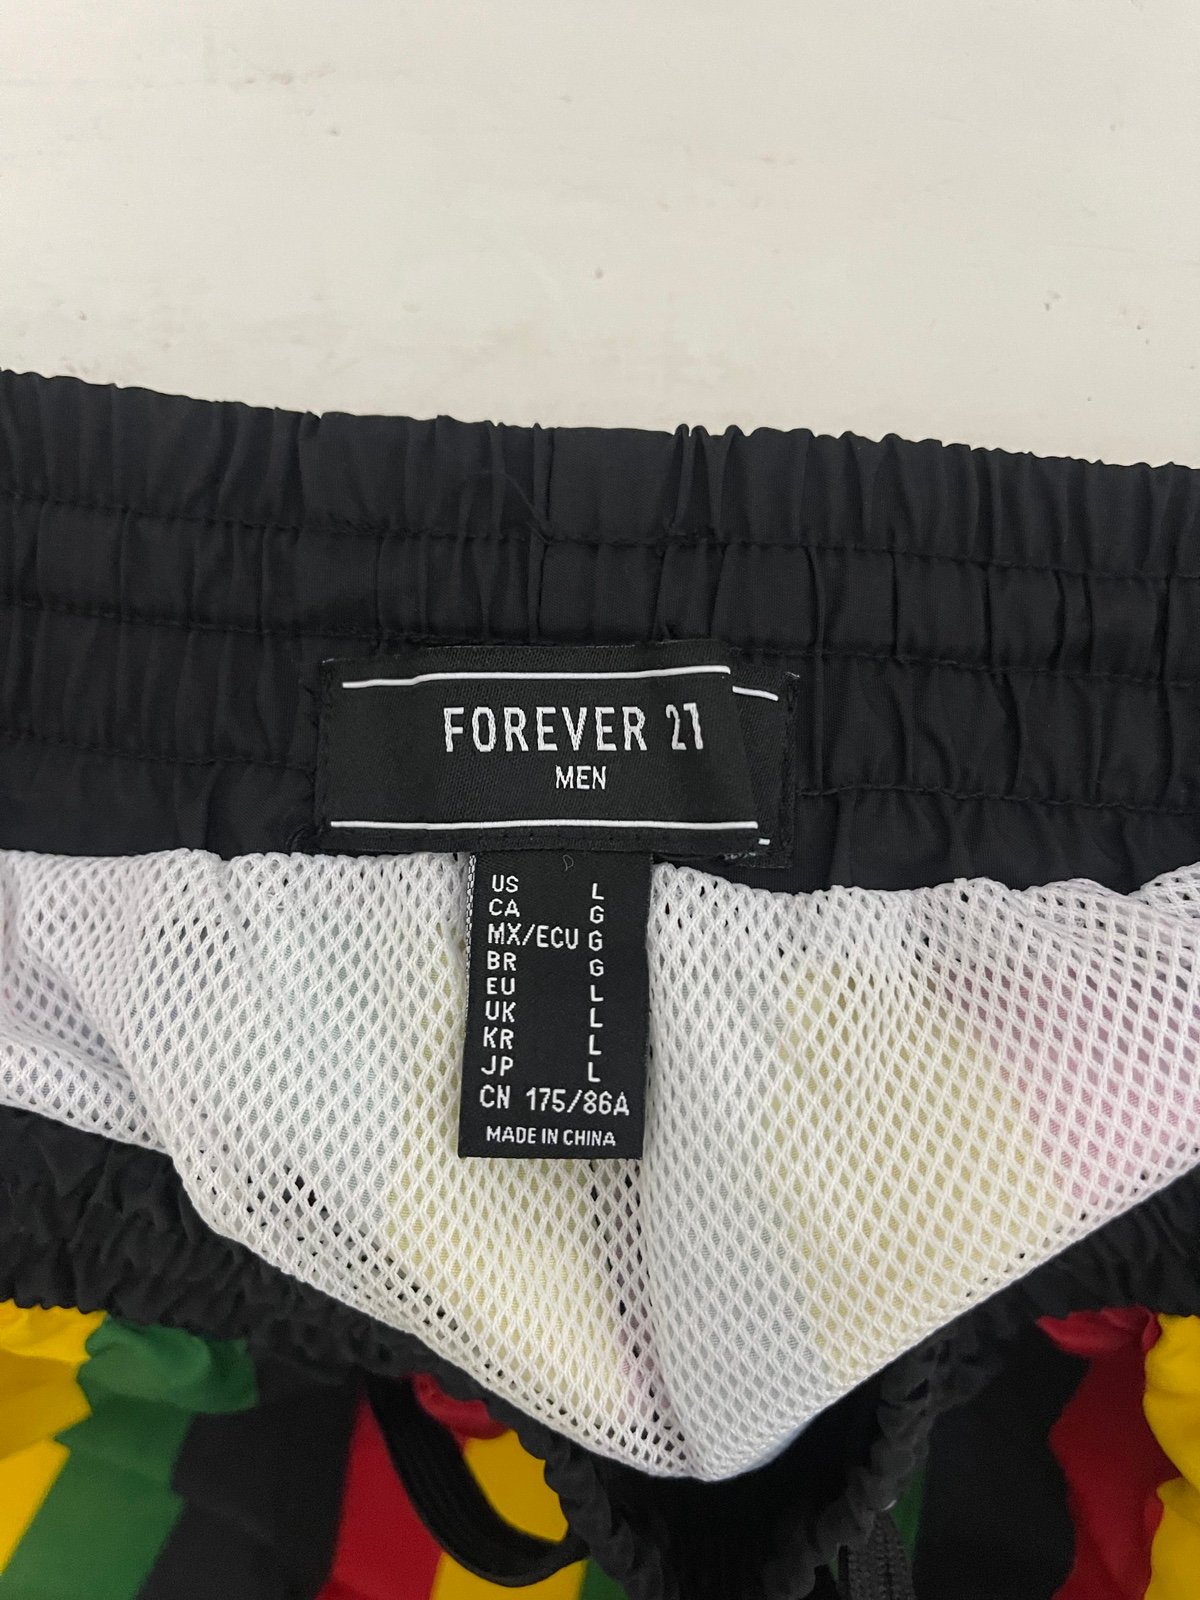 Forever 21 Men’s swimwear bottoms multi colored swim trunks size Large 8TXKLtVrW